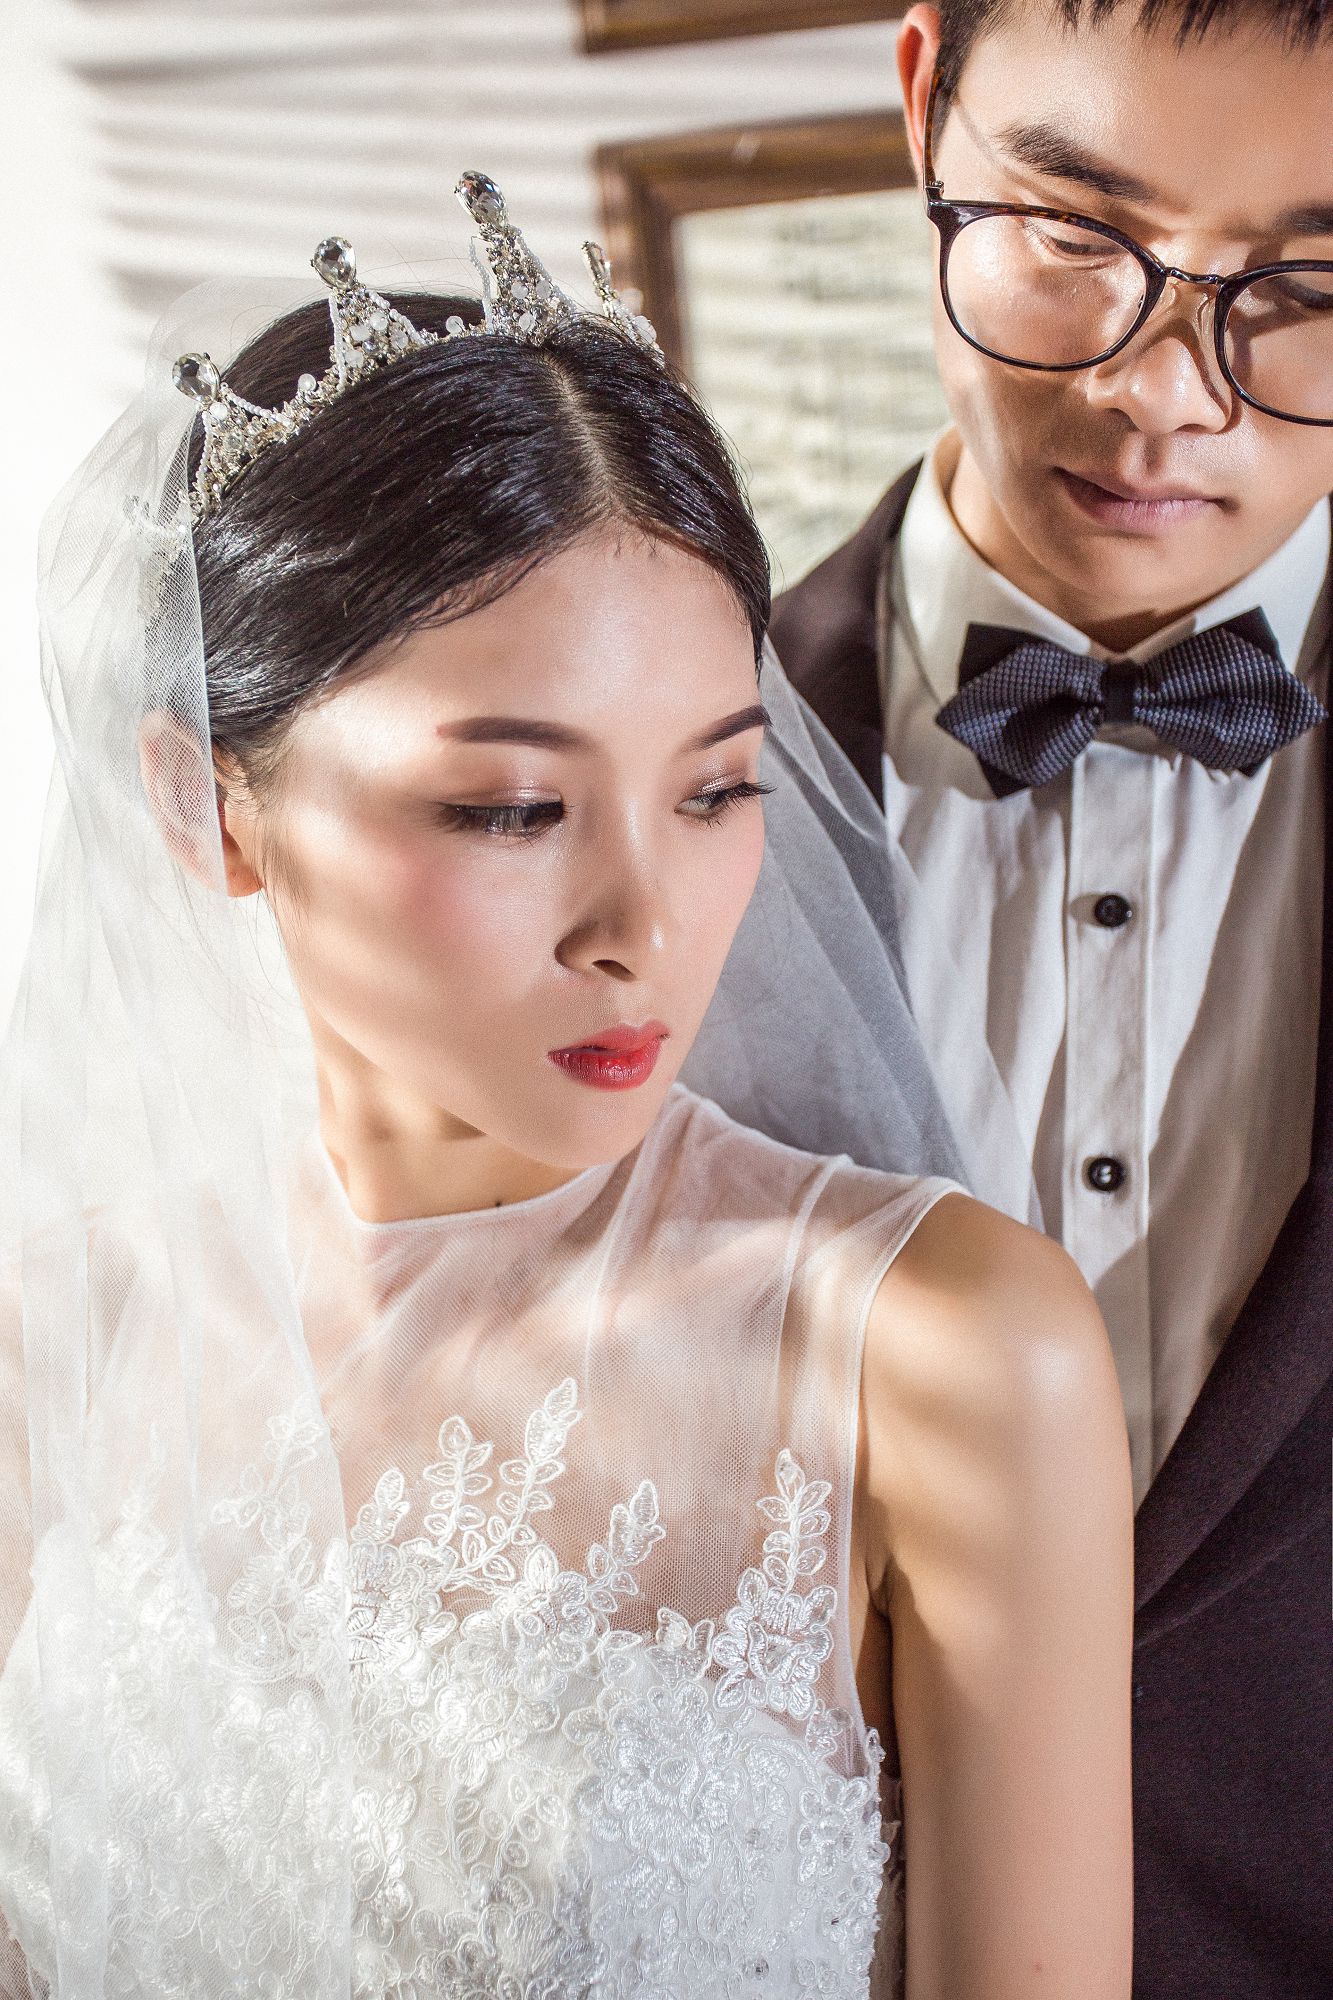 2017年10月深圳结婚照,深圳婚纱照,婚纱照图片